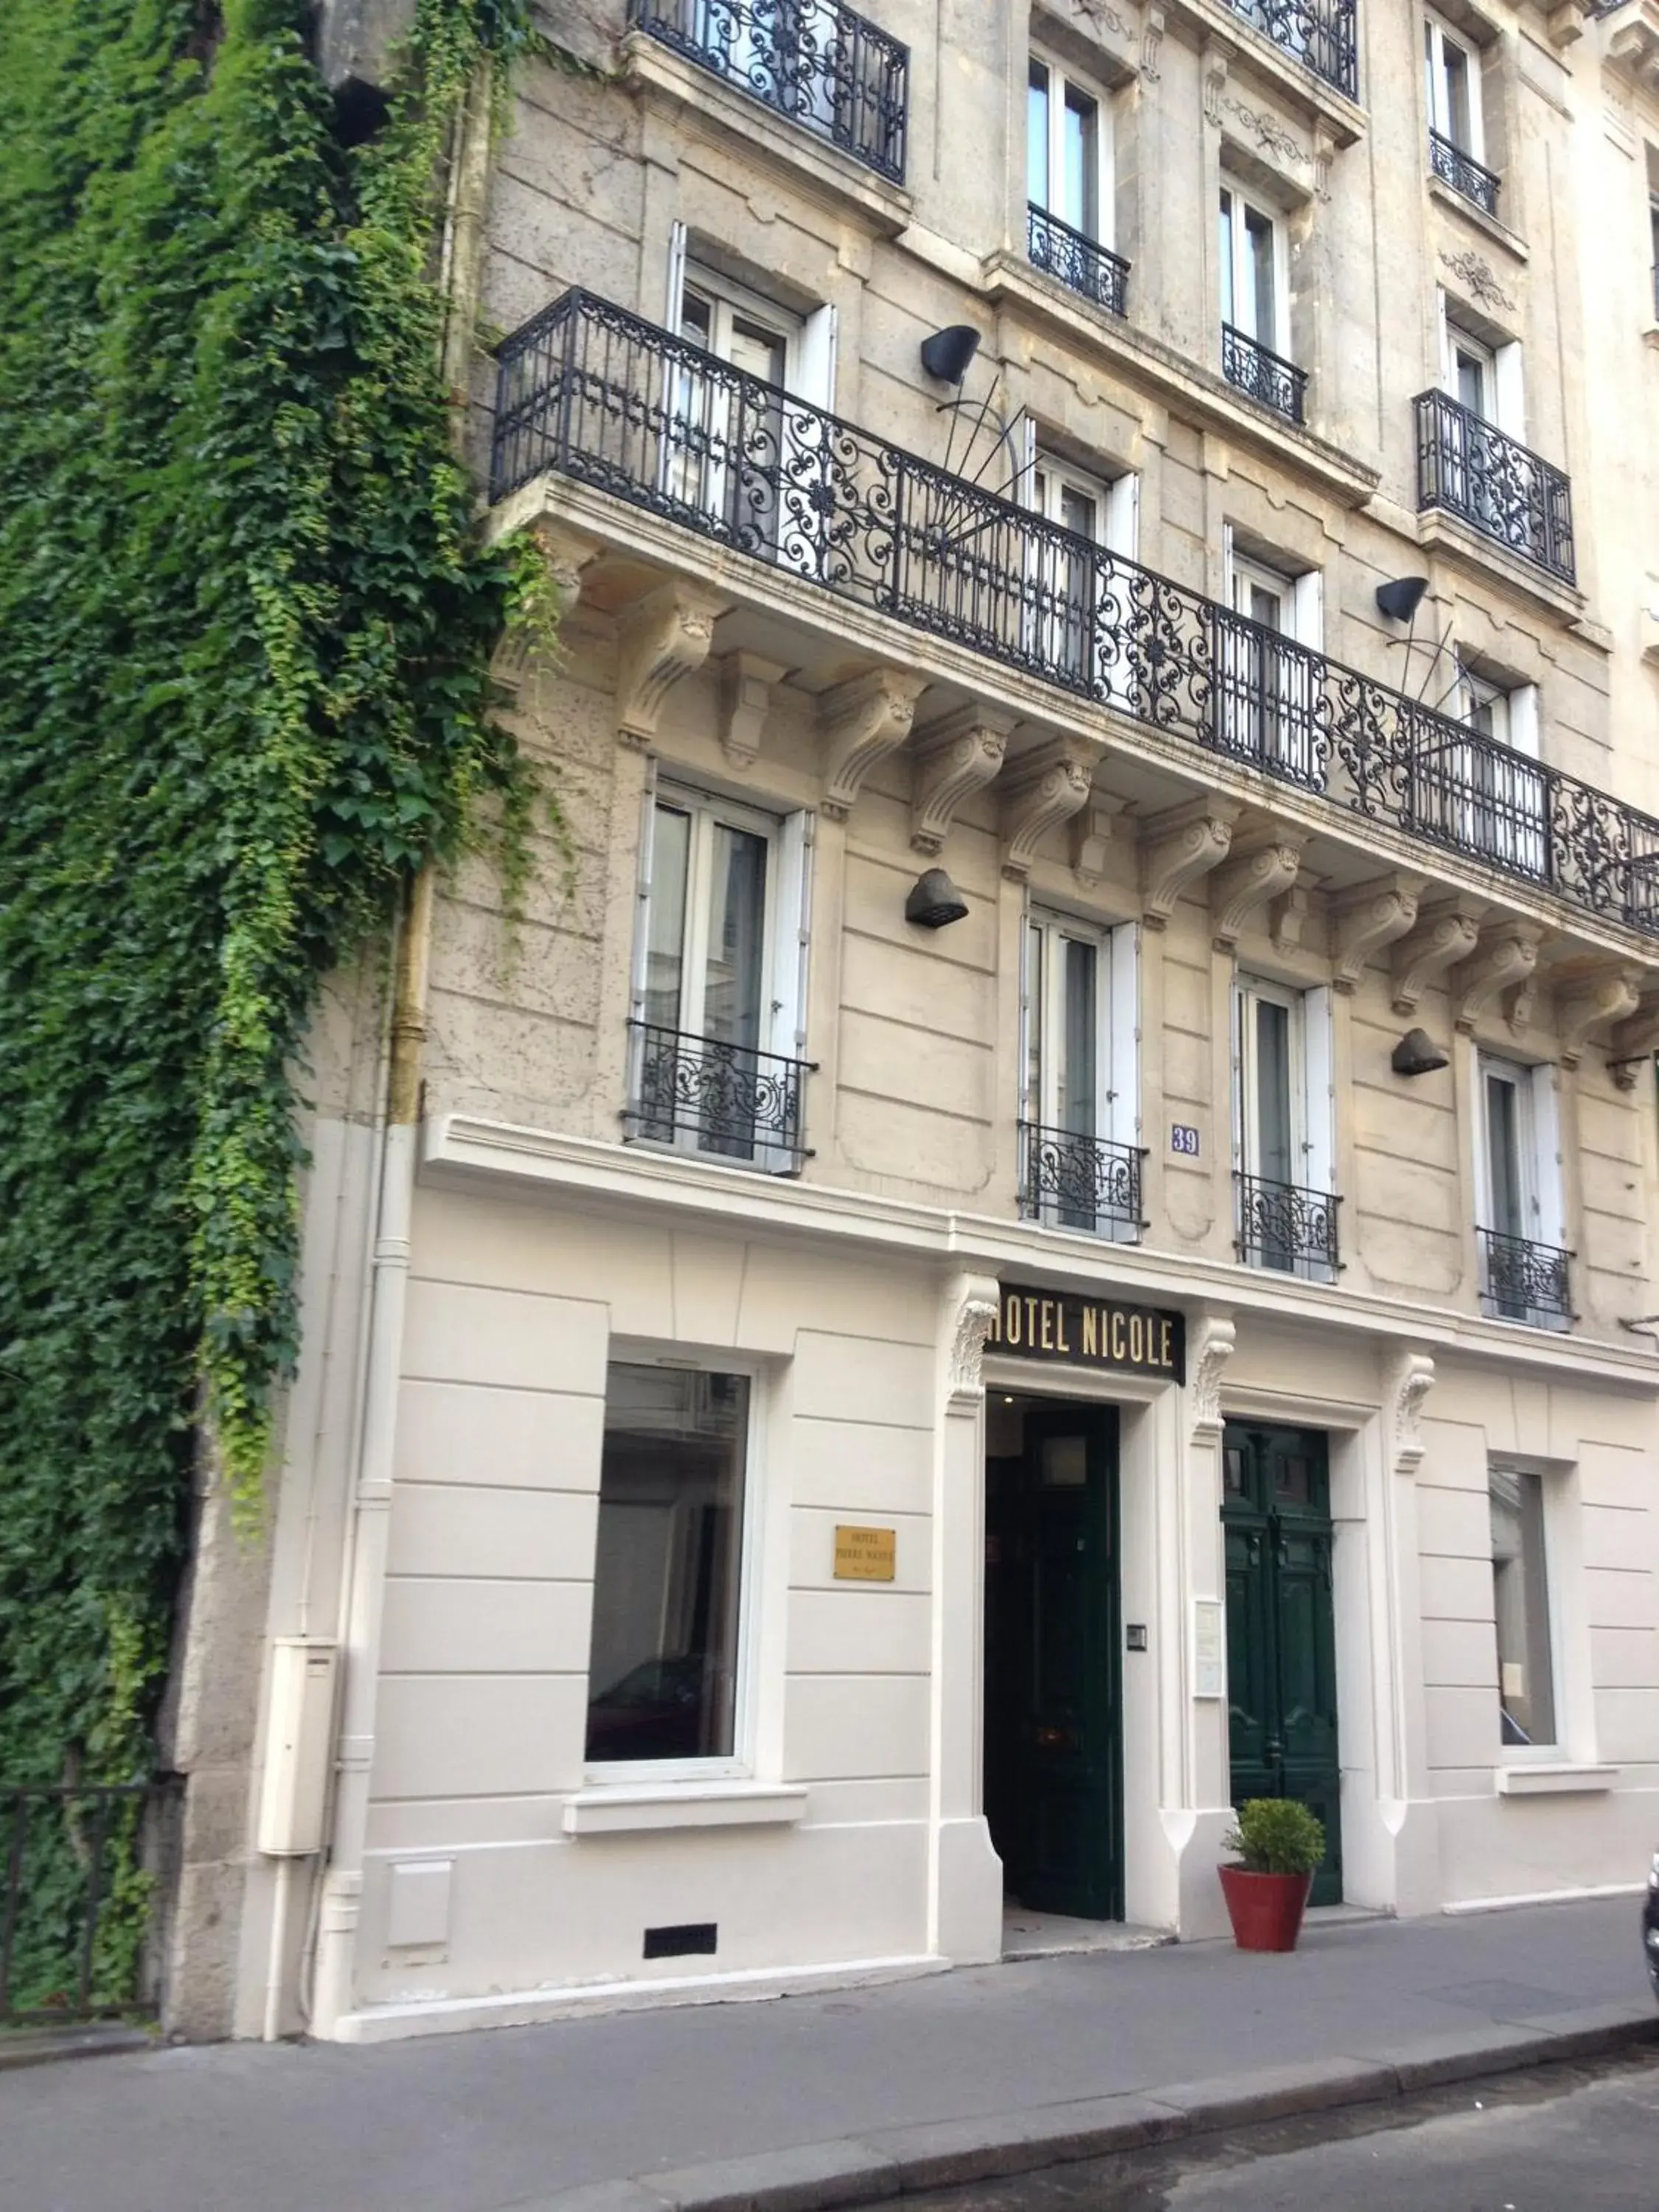 Facade/entrance, Property Building in Hotel Pierre Nicole